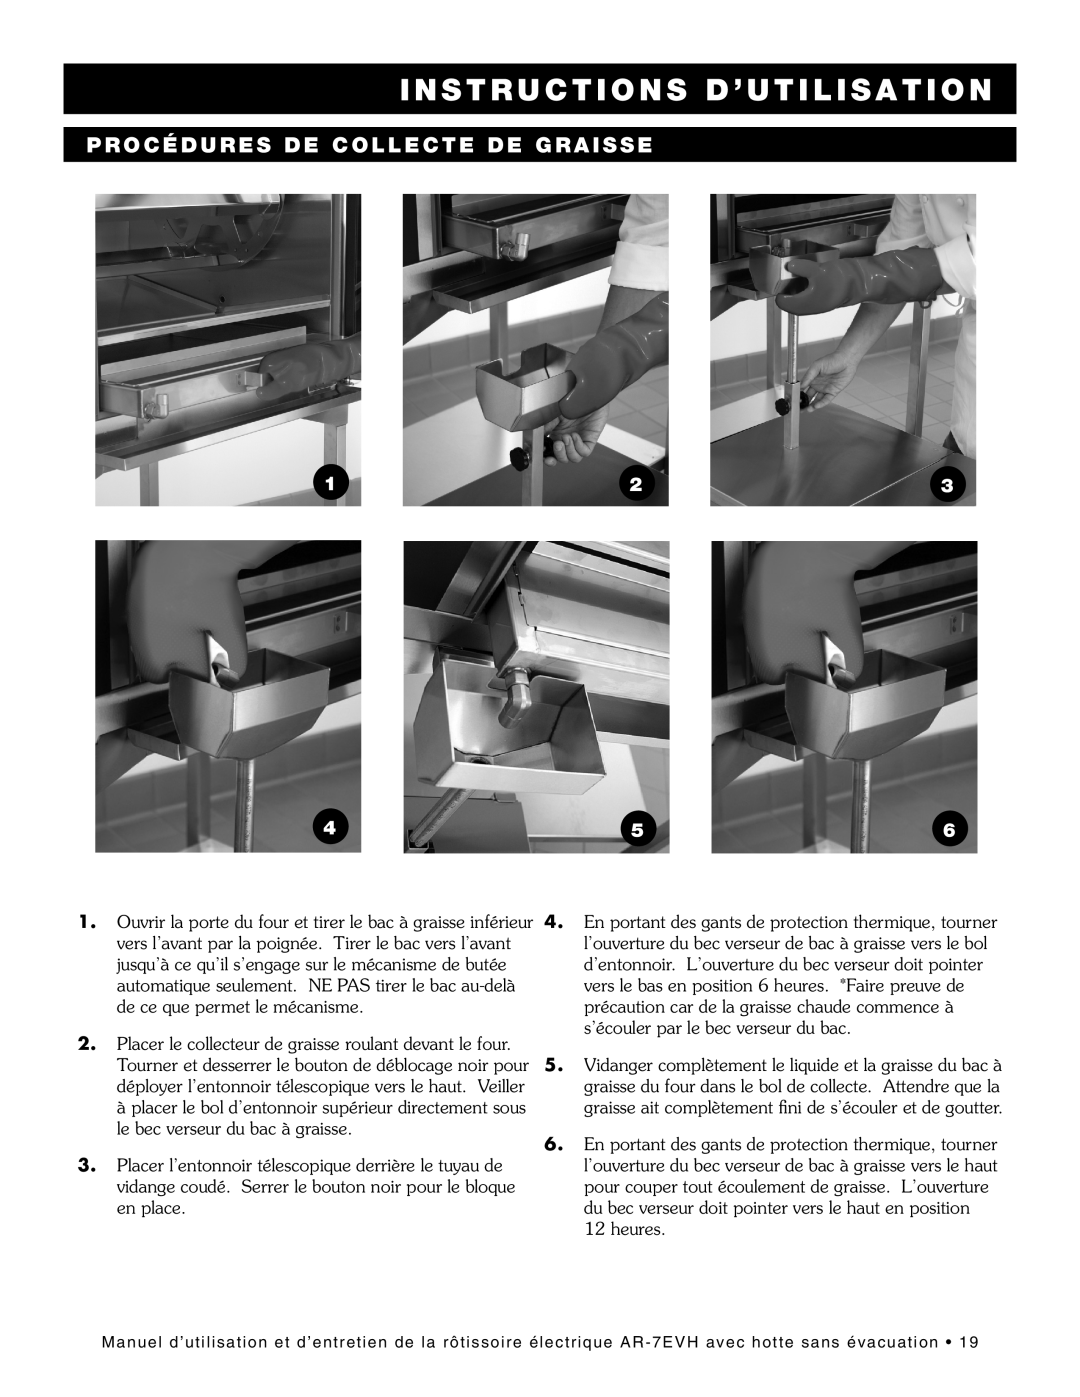 Alto-Shaam ar-7evh manual Procédures De Collecte De Graisse, Instructions D’Utilisation 